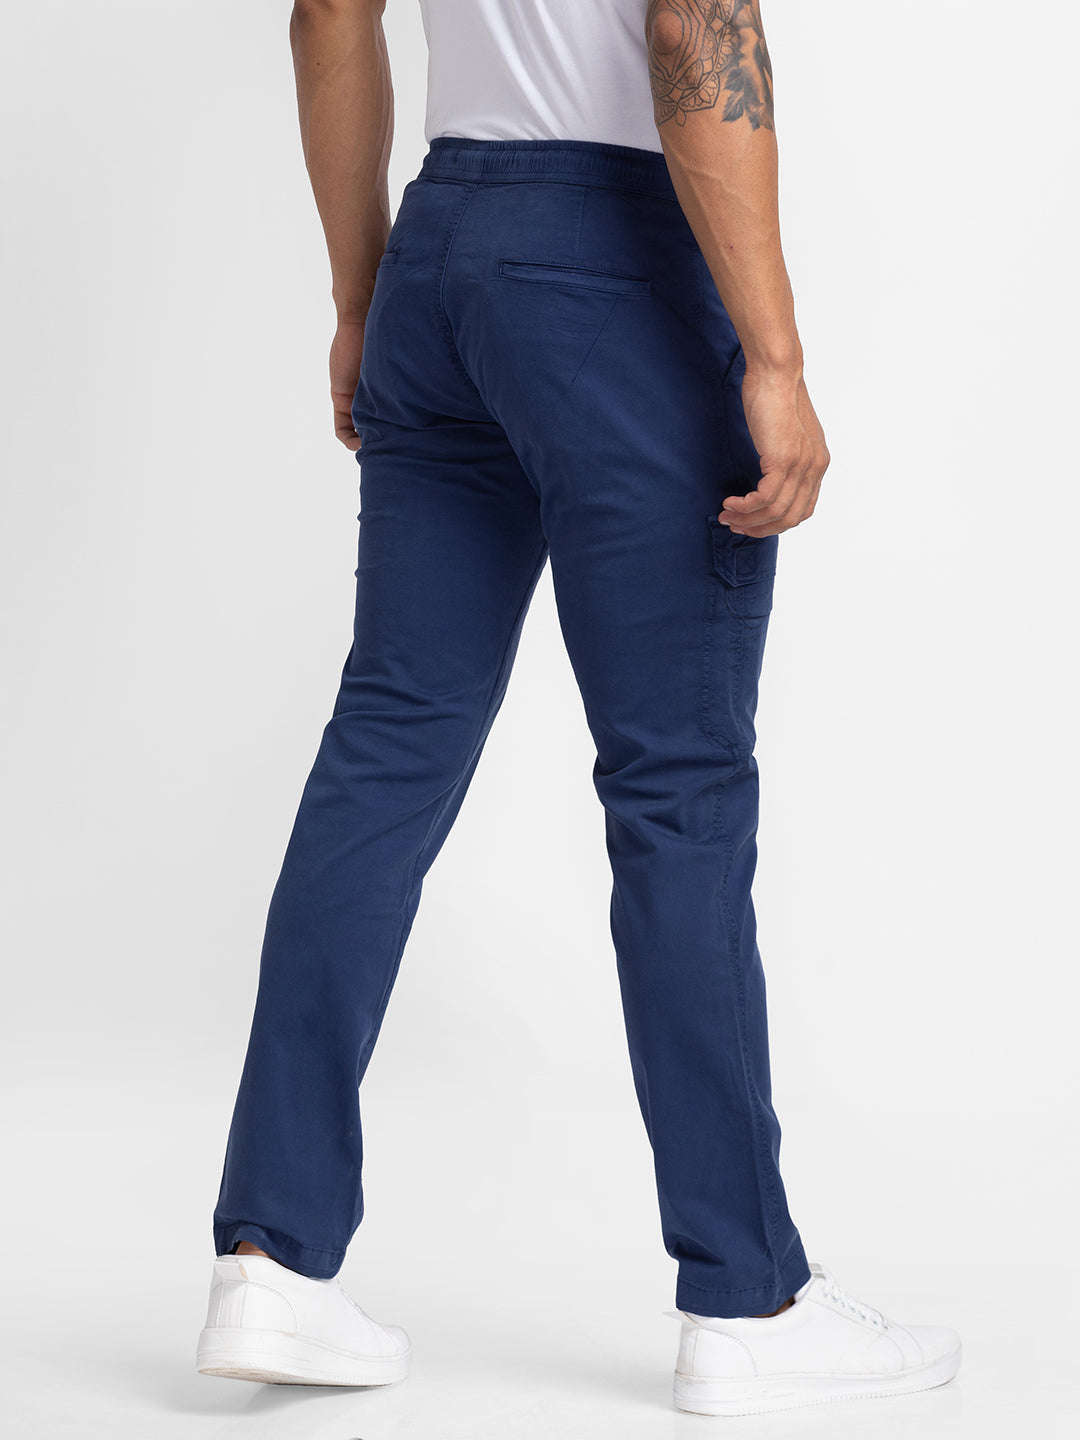 Spykar Navy Blue Cotton Slim Fit Regular Length Trouser For Men